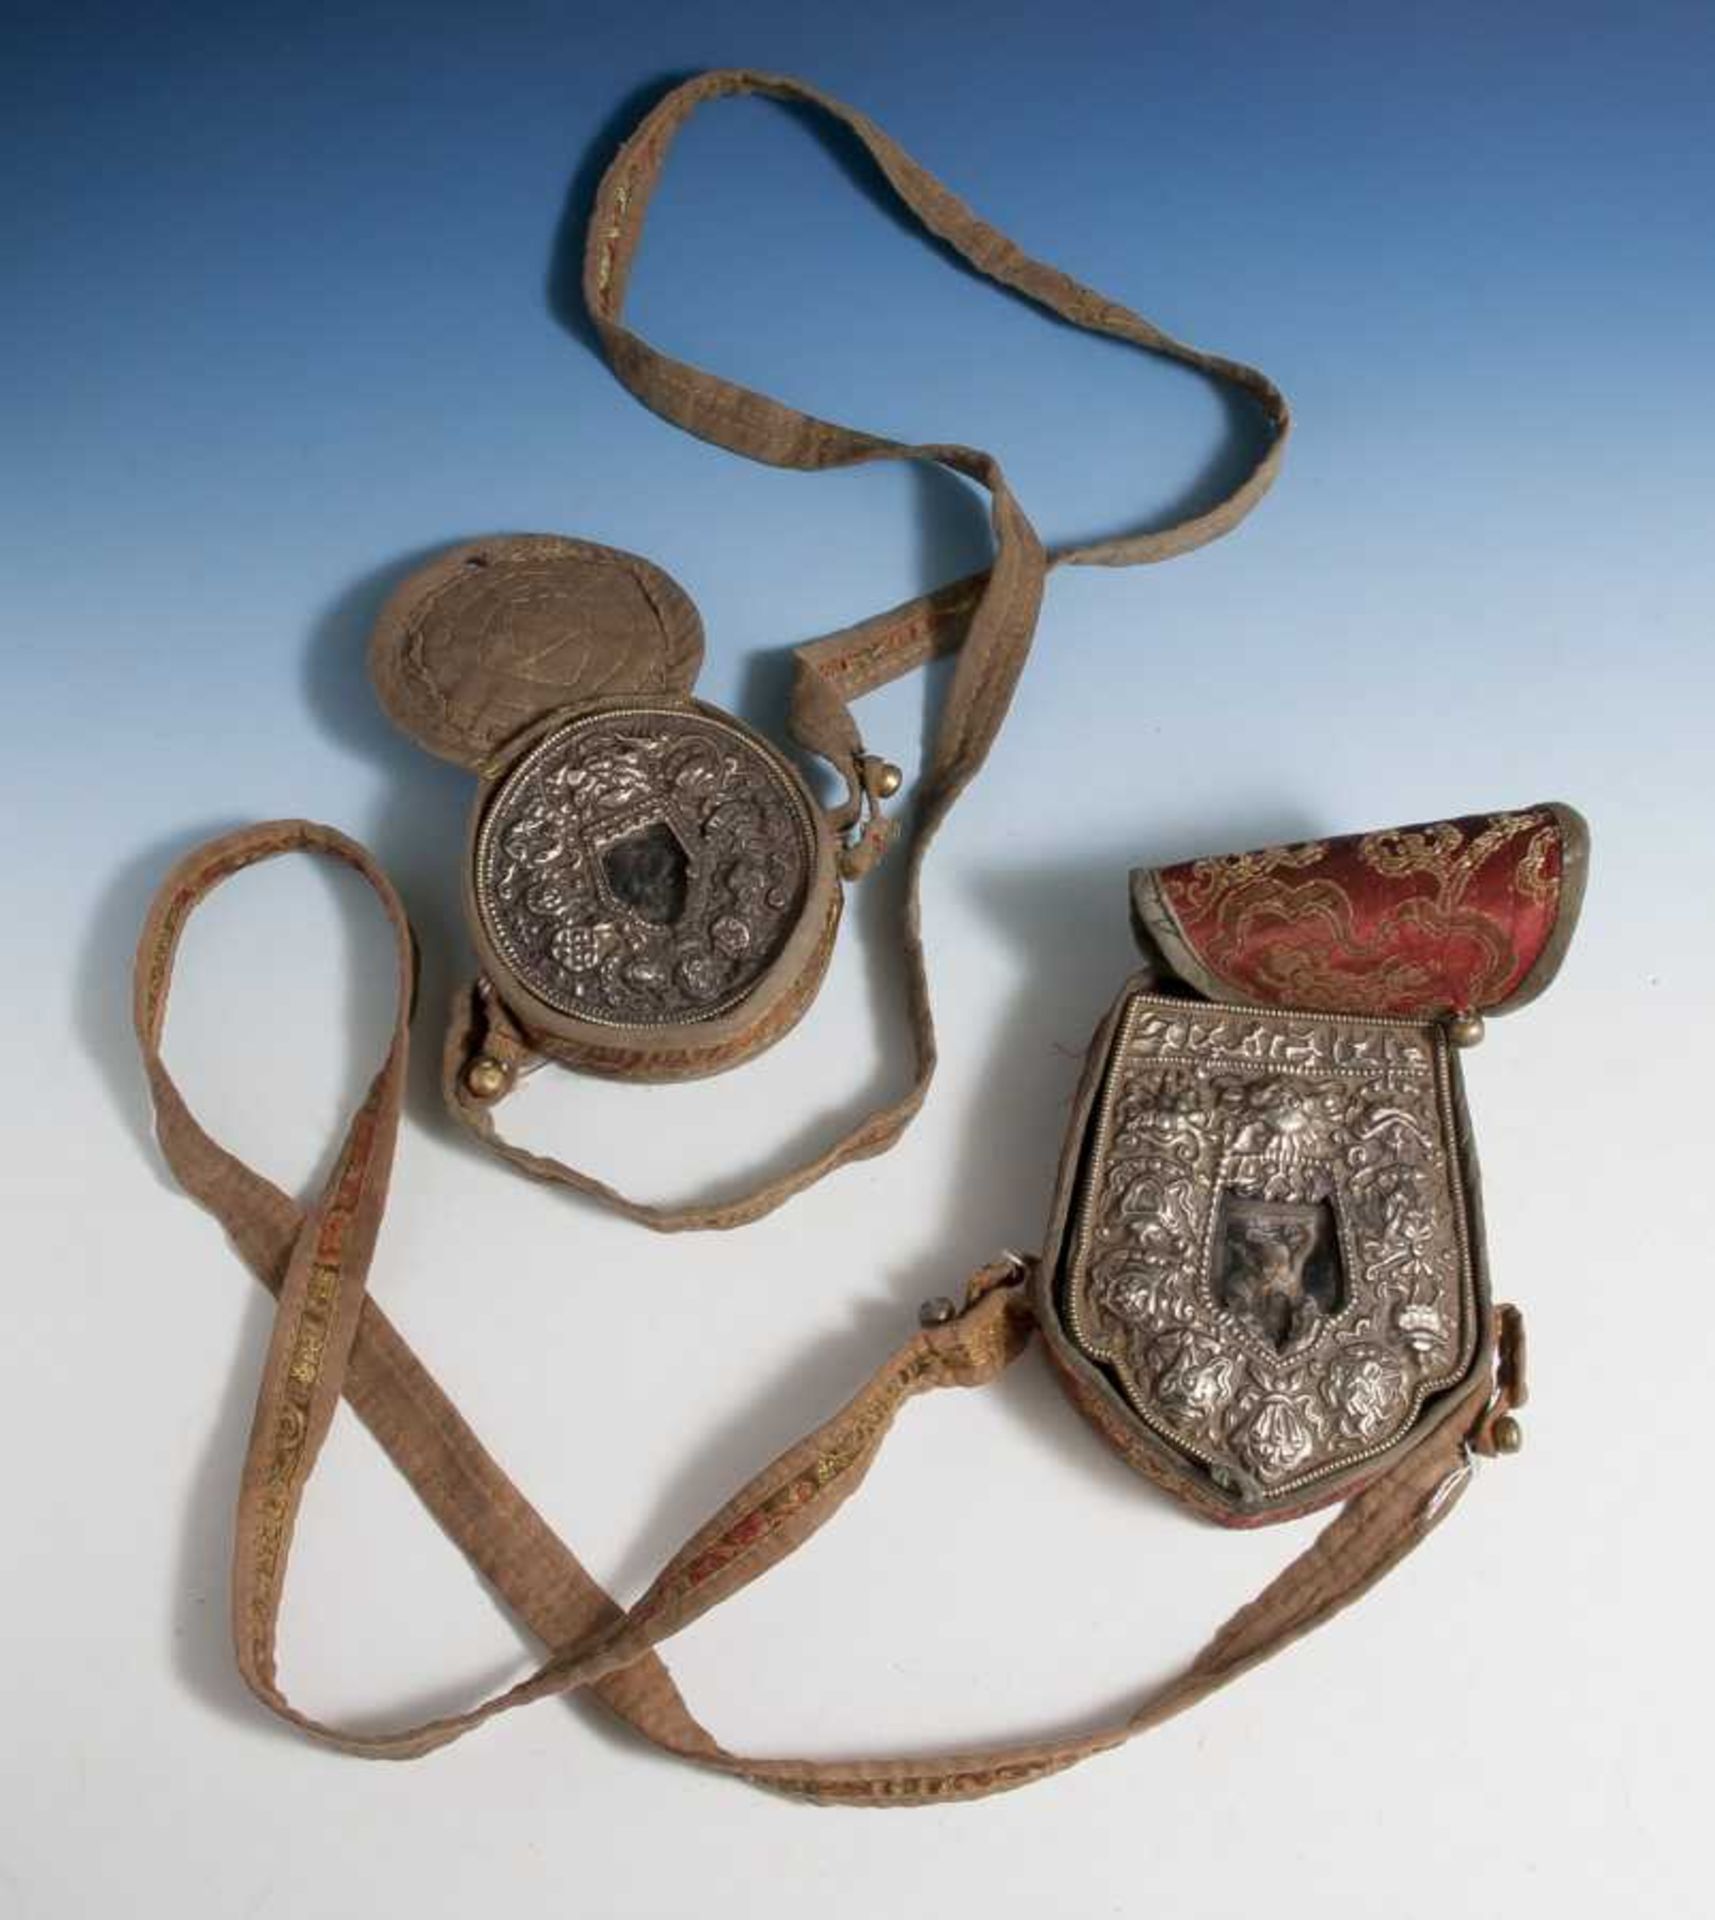 2 Amulettbehälter aus Silber mit Brokat-Etuis, Tibet, 19. Jahrhundert, Altersspuren.